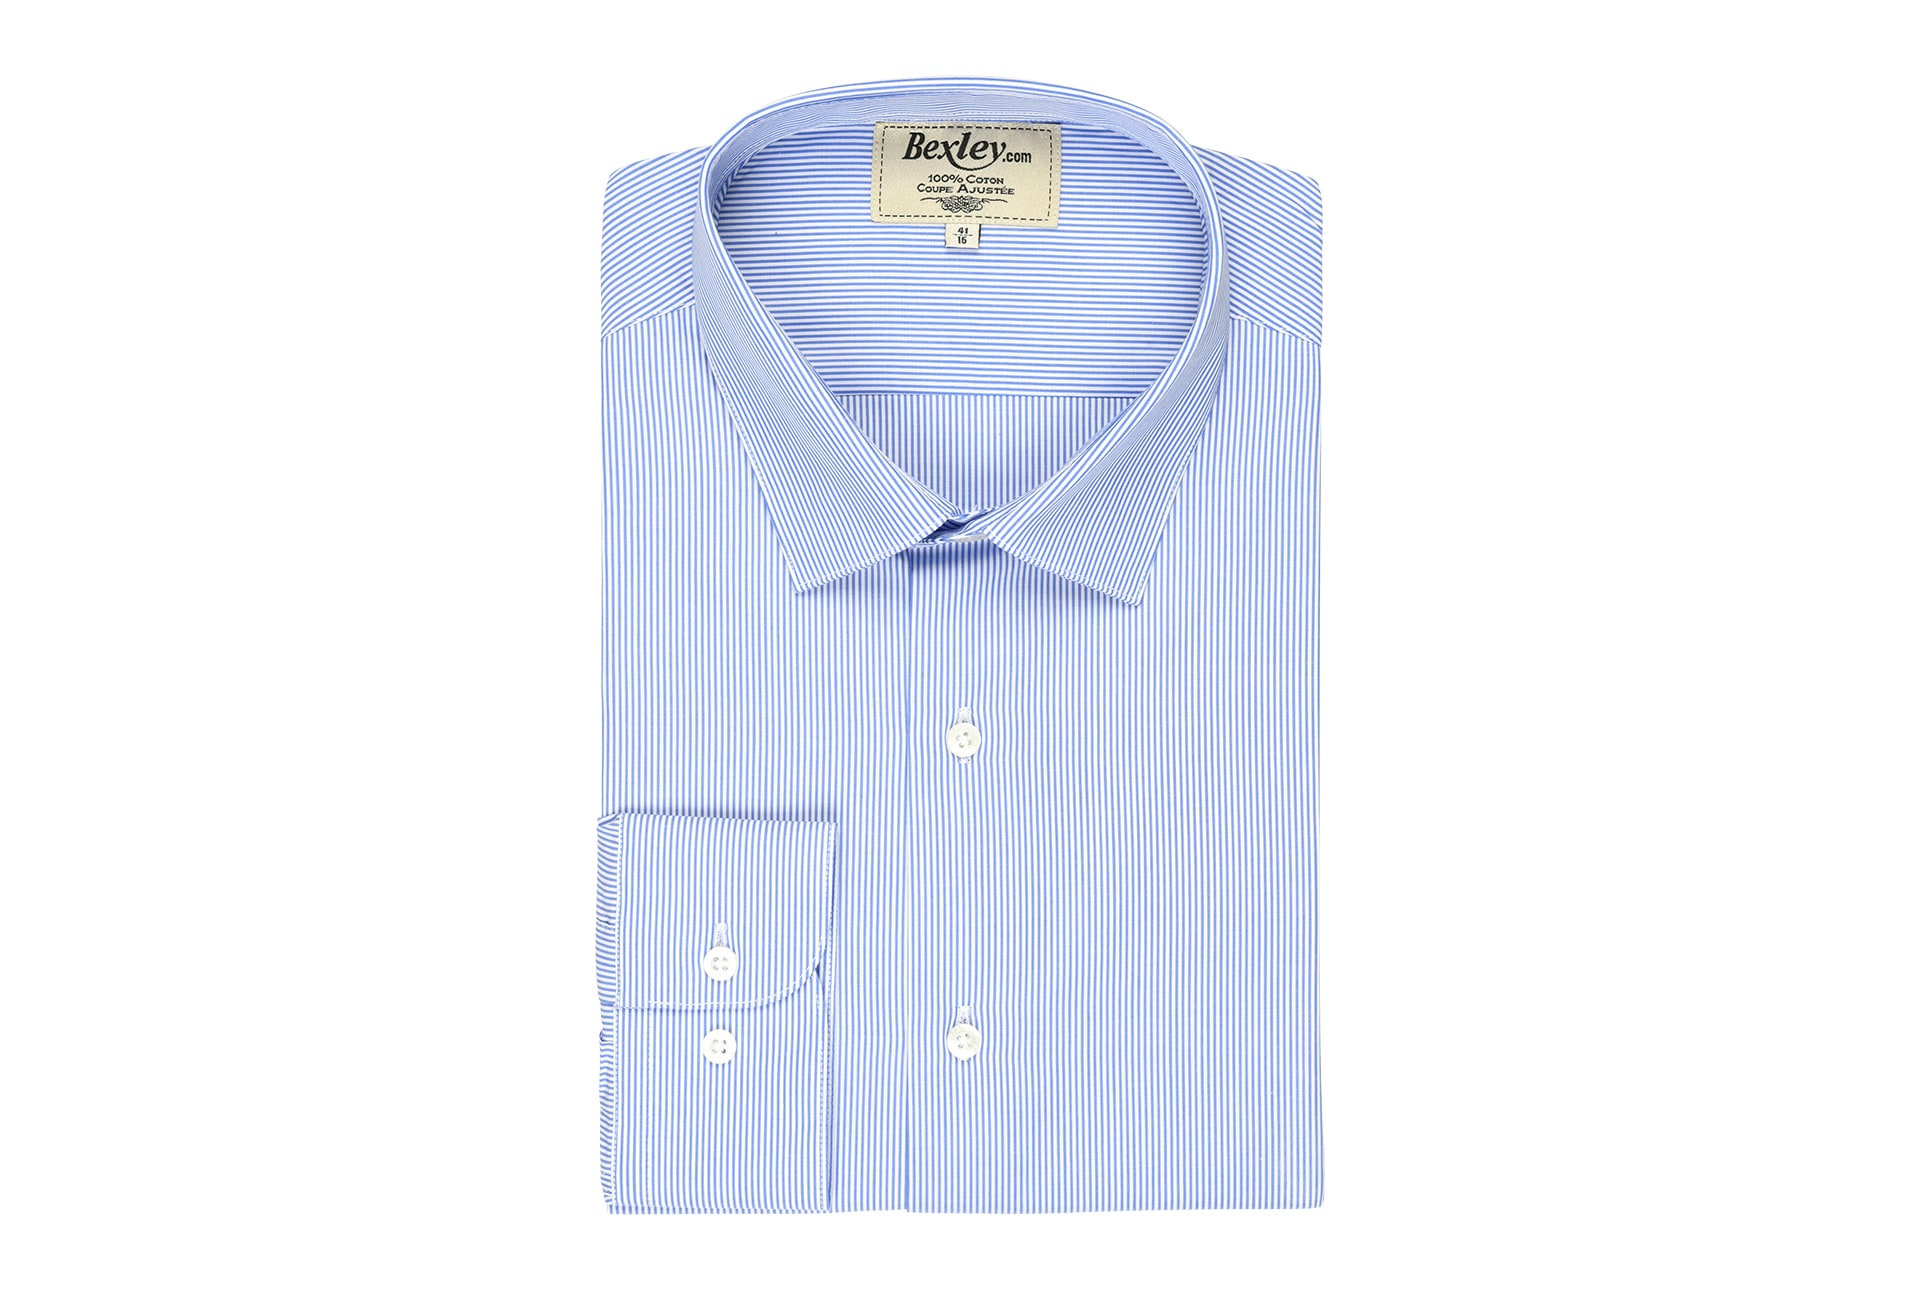 bexley chemise homme 100% coton, bleu ocean et blanc, manches longues, coupe cintrée